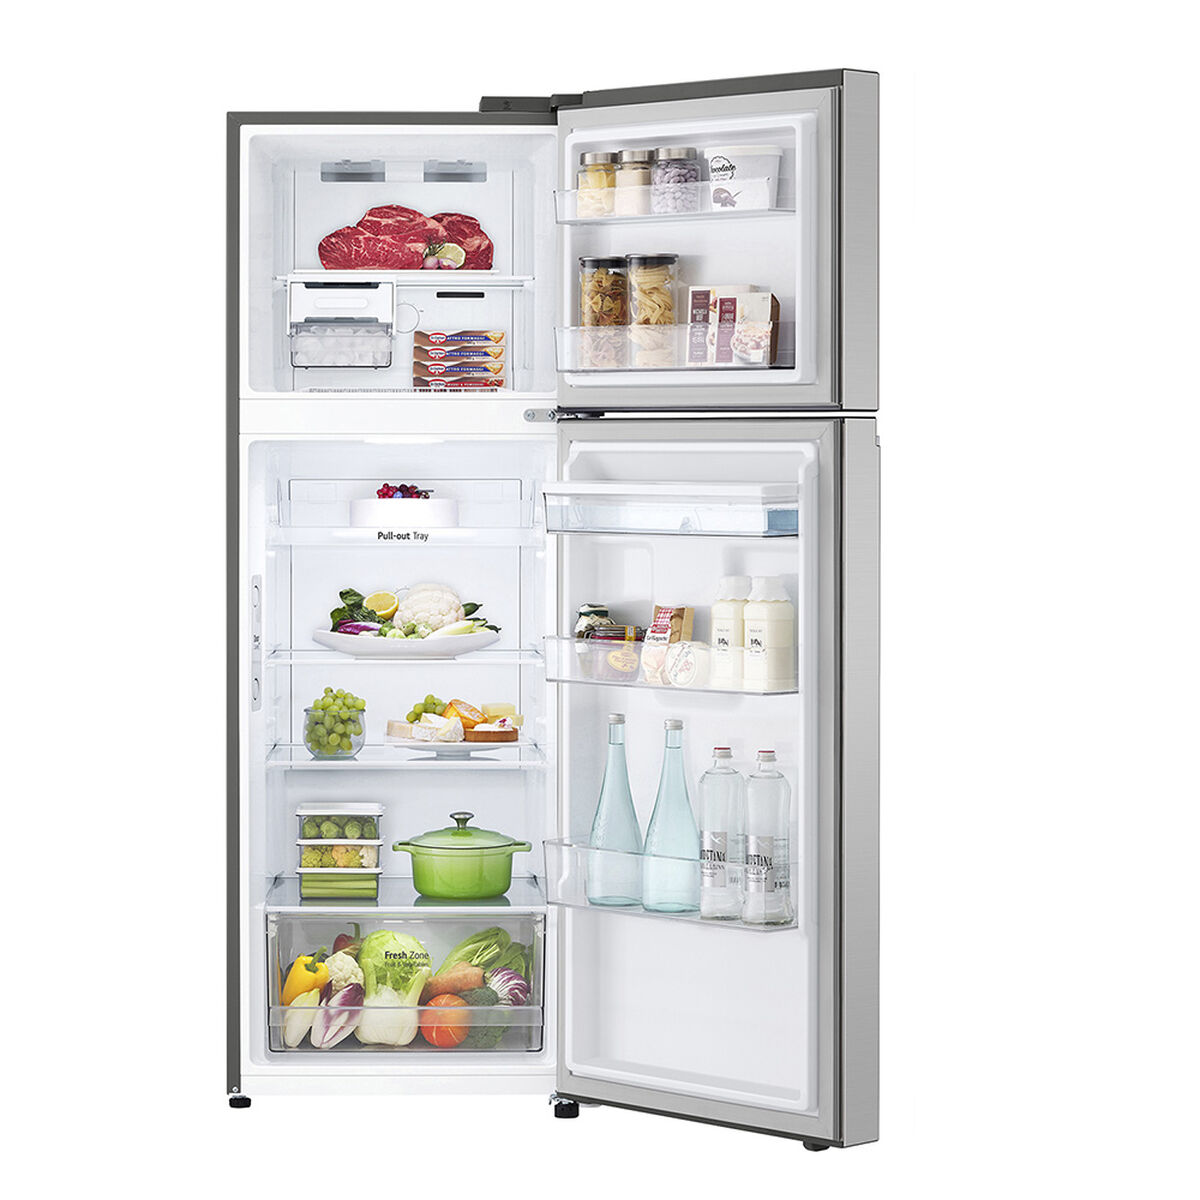 Refrigerador No Frost LG VT34WPP 335 lts.